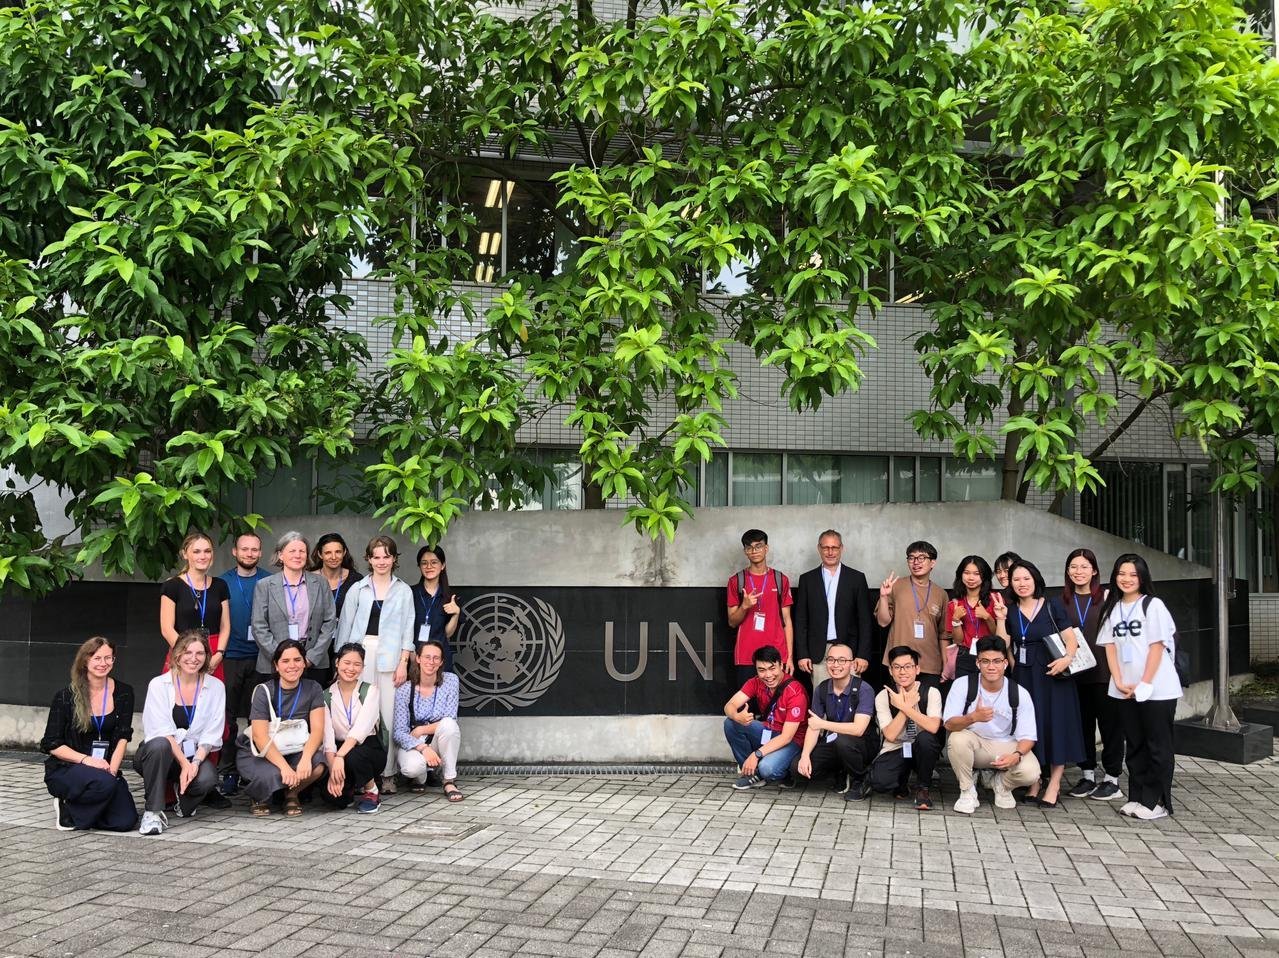 Studierender beider Länder auf einen Gruppenfoto vor dem UN-Gebäude in Hanoi